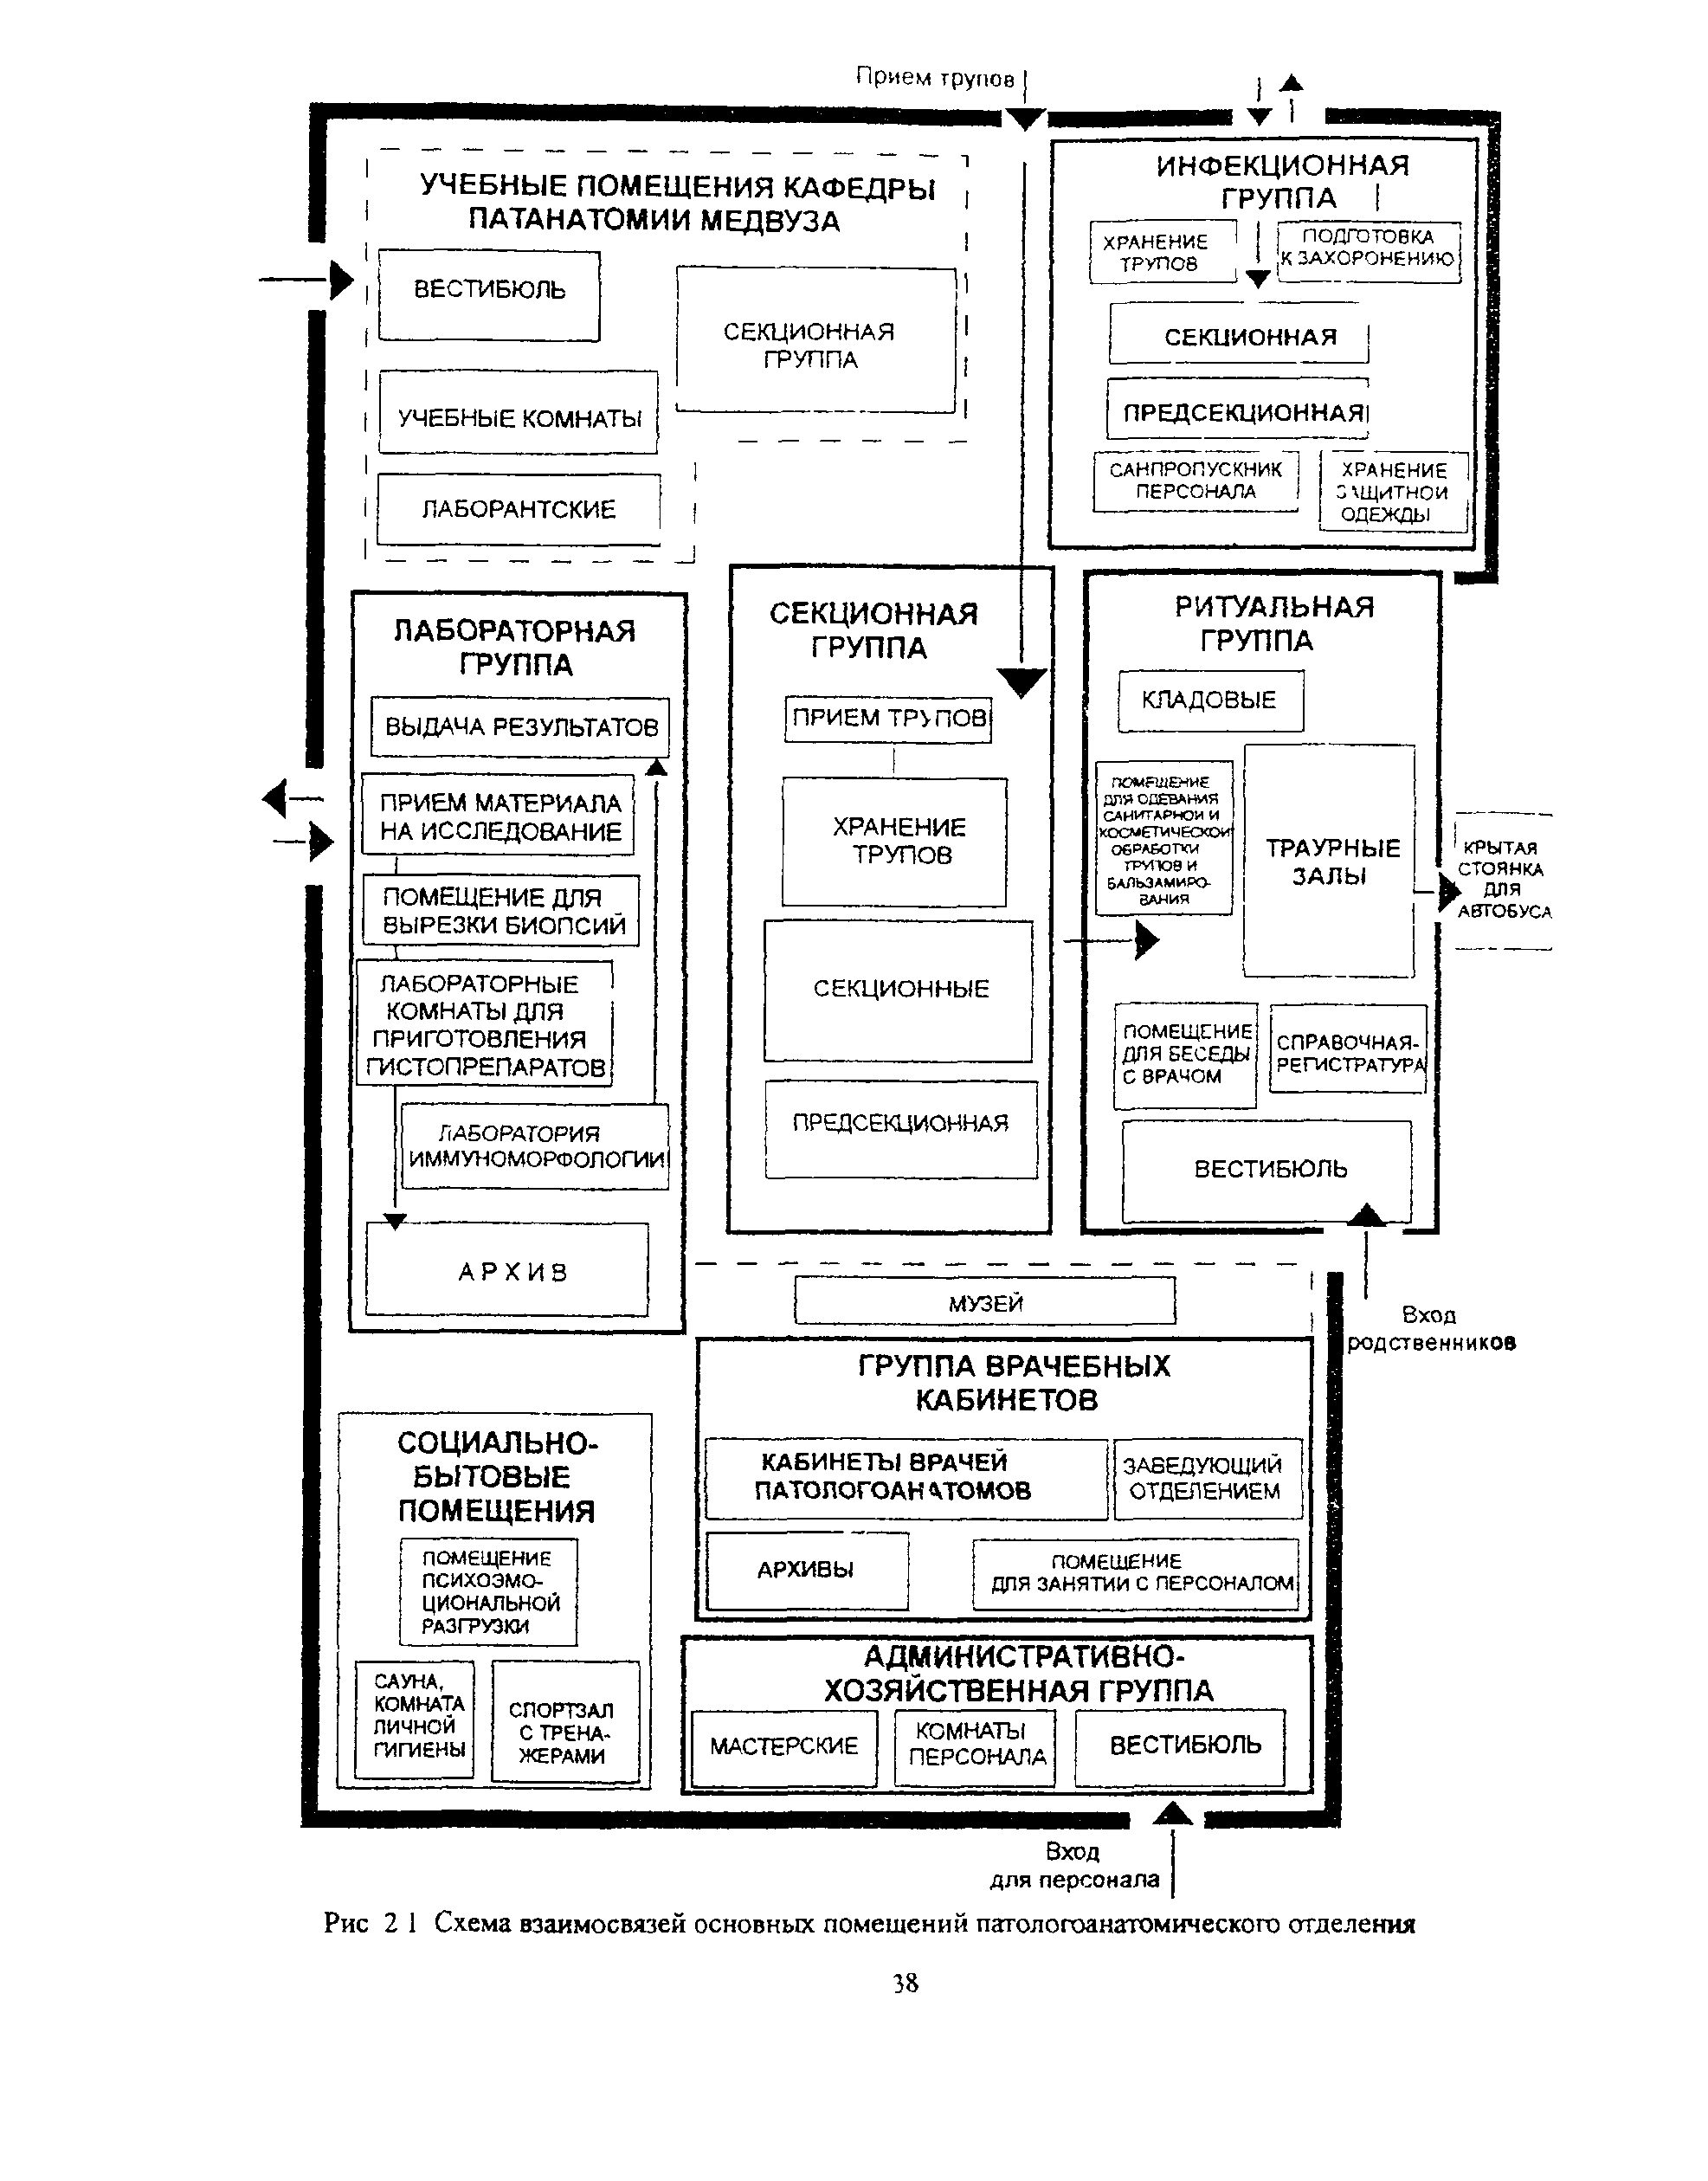 Схема патологоанатомического отделения